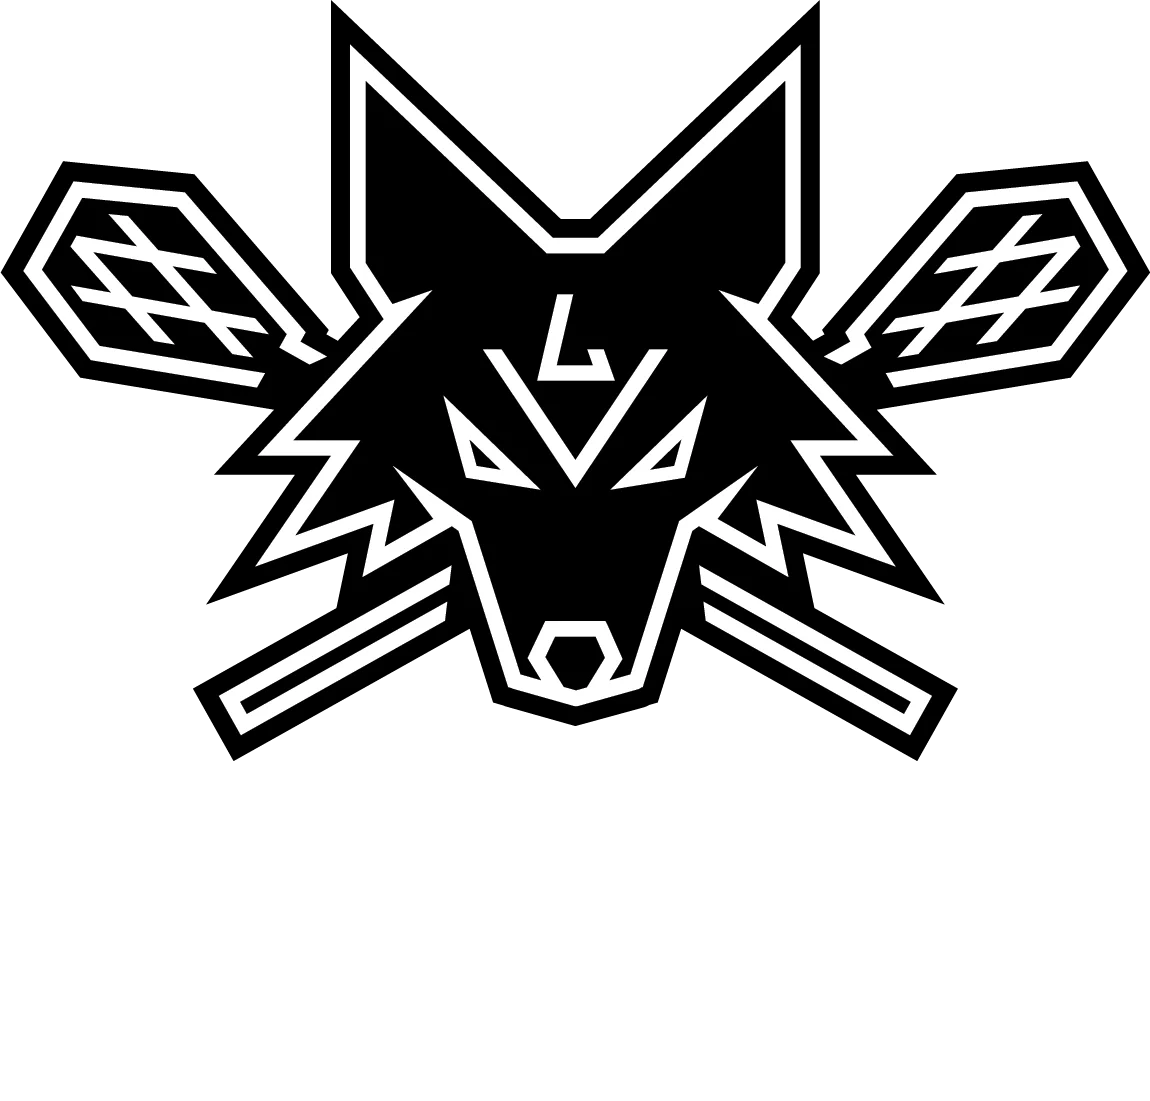 Desert Dogs